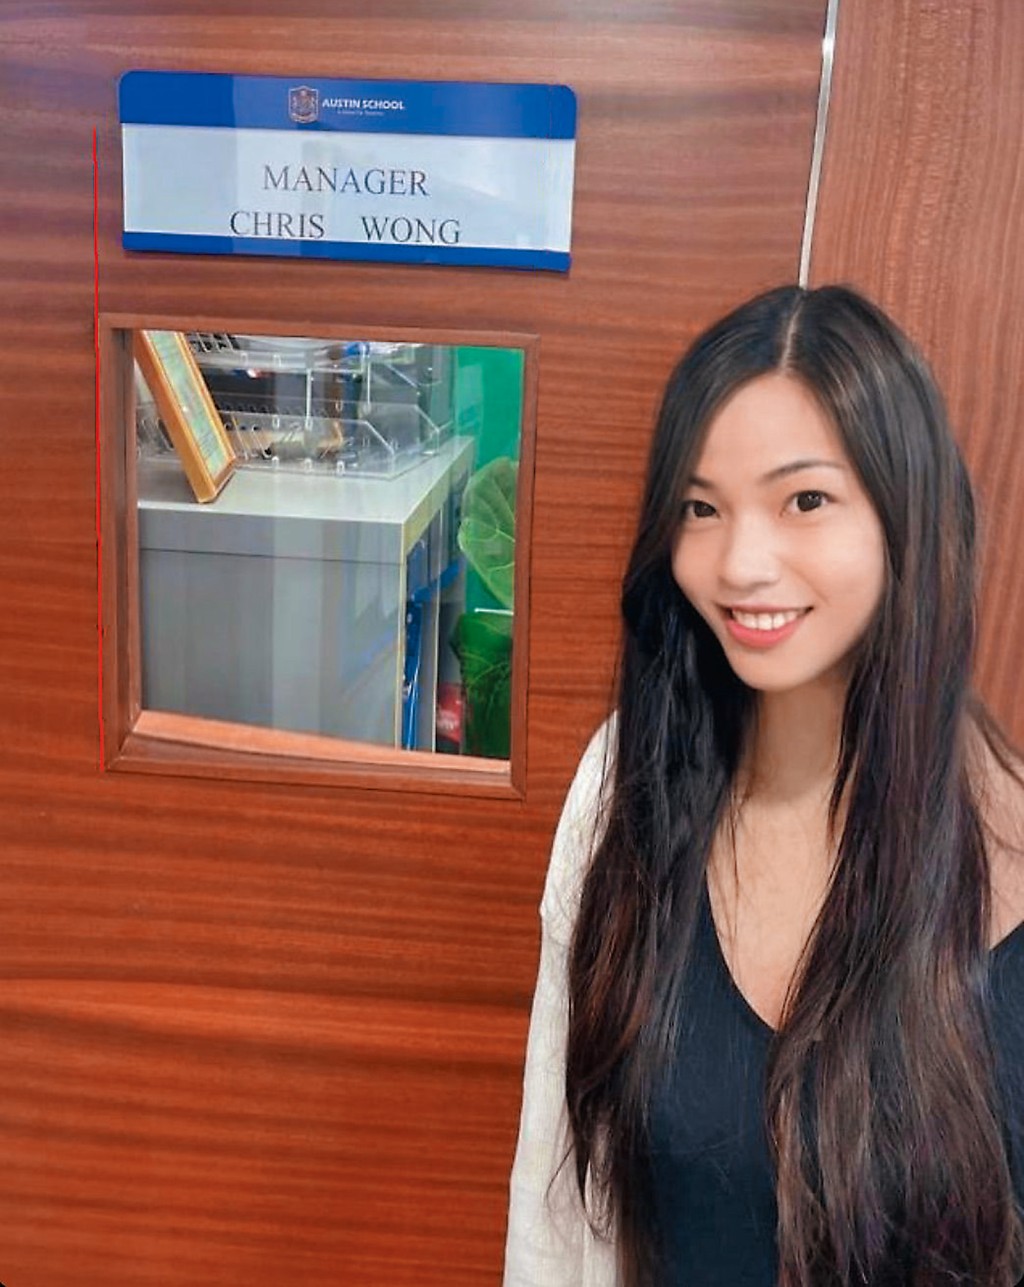 王青霞（Chris Wong）曾經在社交網上載自己在Austin School任職時的名片及她在校舍內的照片，而她的職銜是「Manager」，學歷是「博士」。